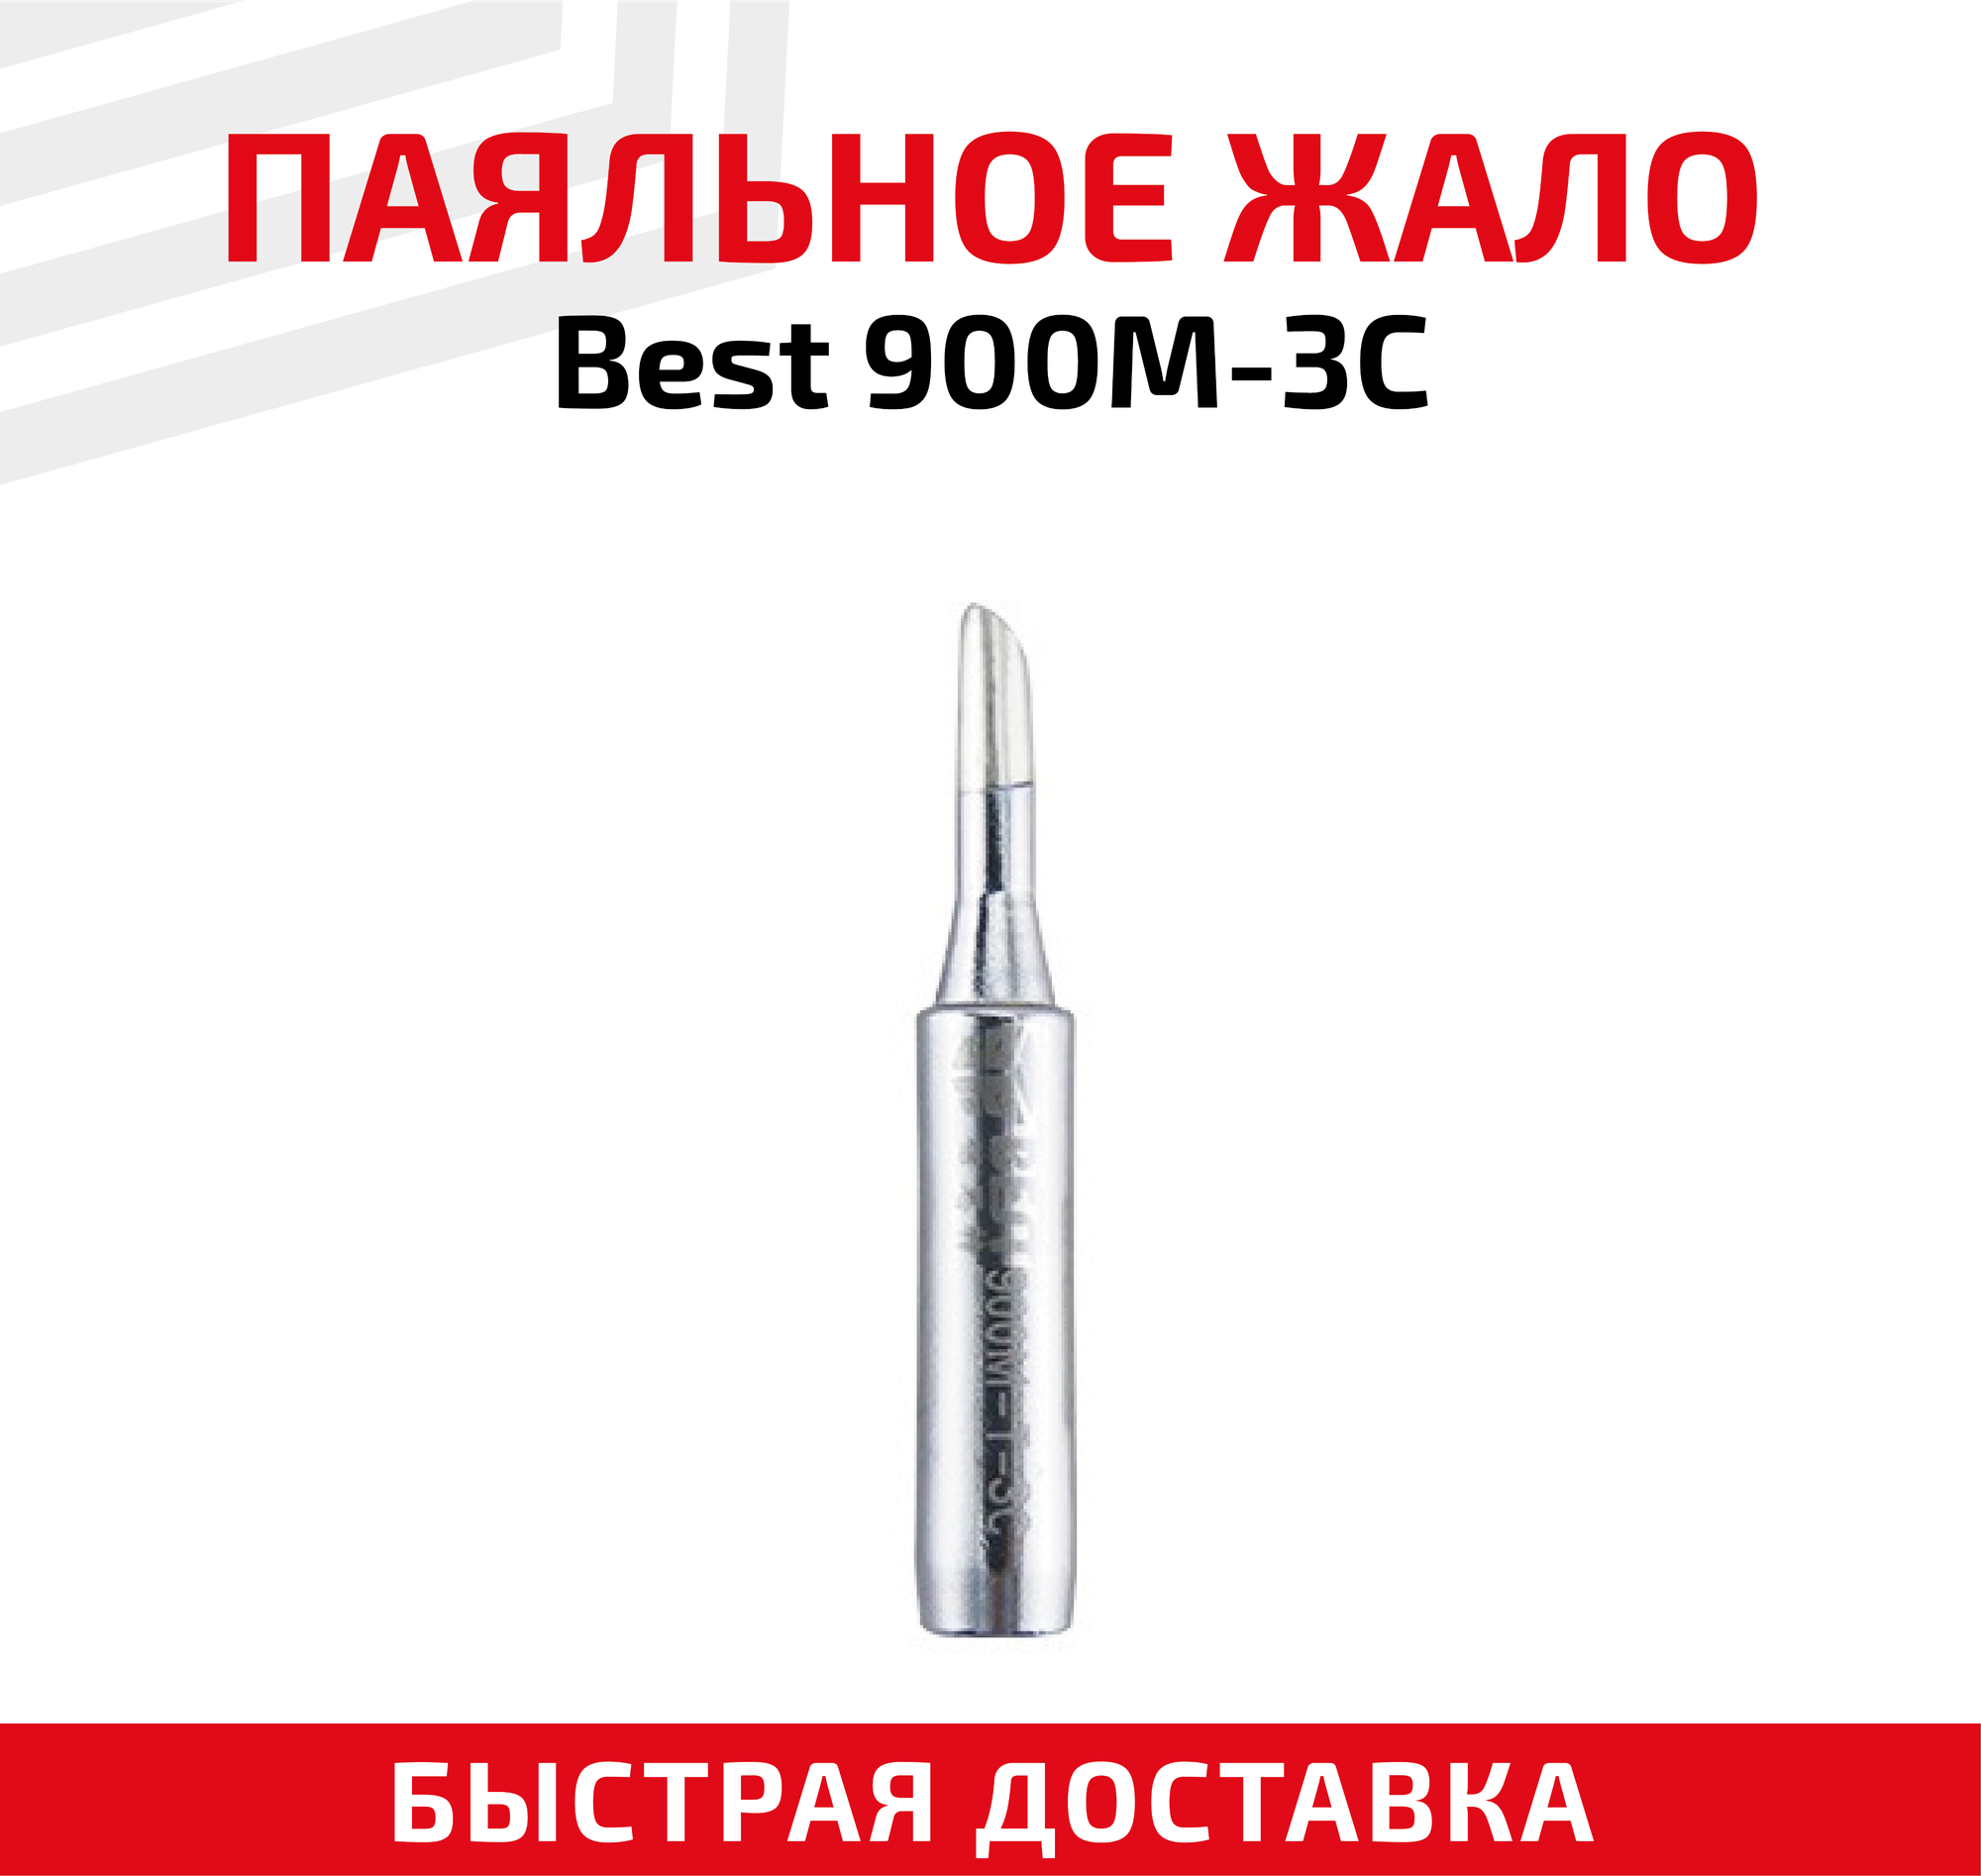 Жало (насадка, наконечник) для паяльника (паяльной станции) Best 900M-3C, со скосом, 3 мм